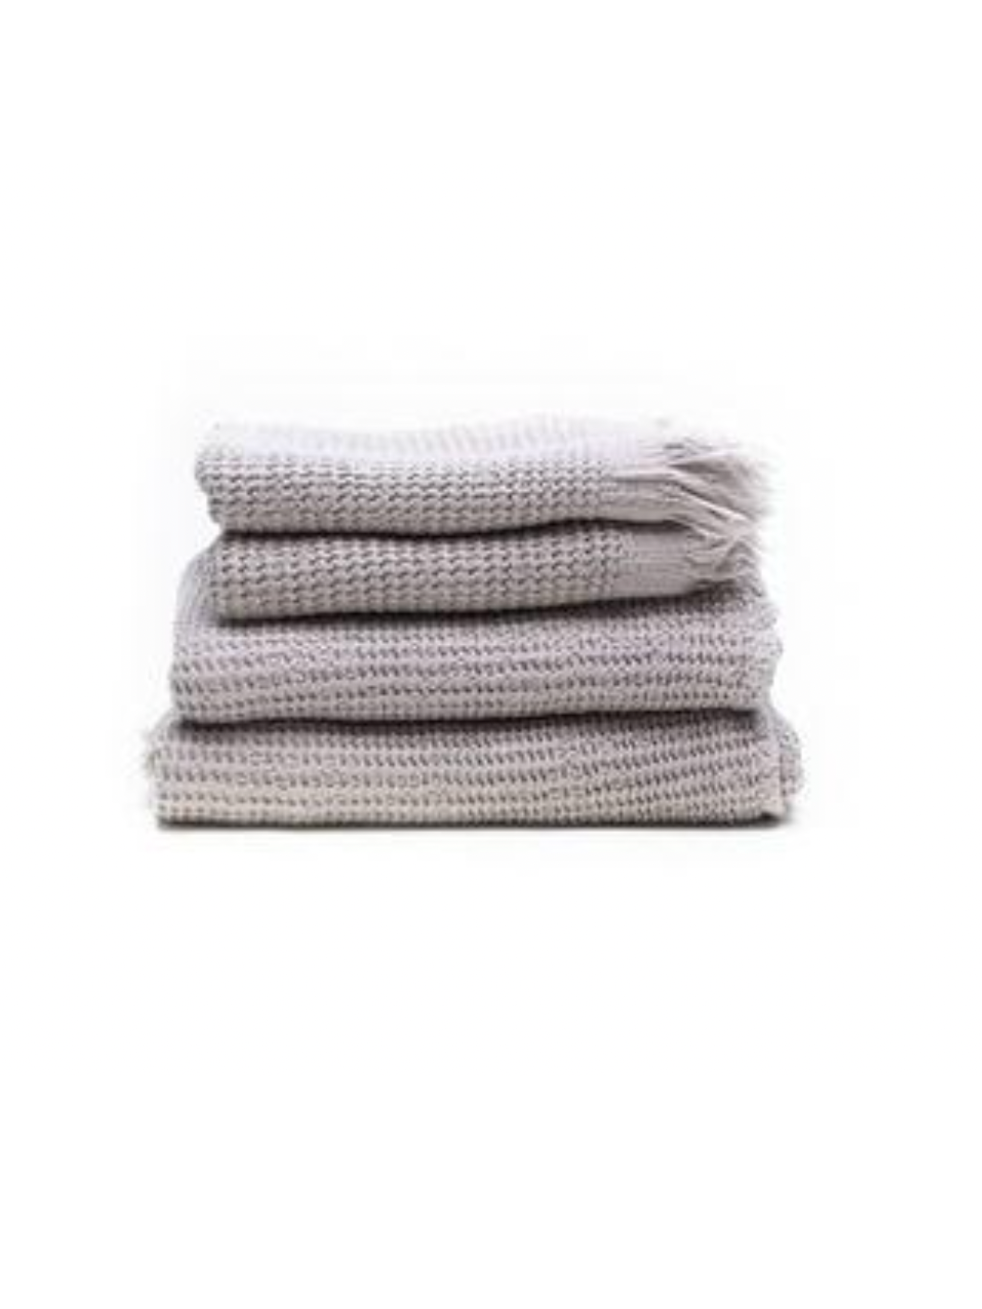 Stack of gray ella towels